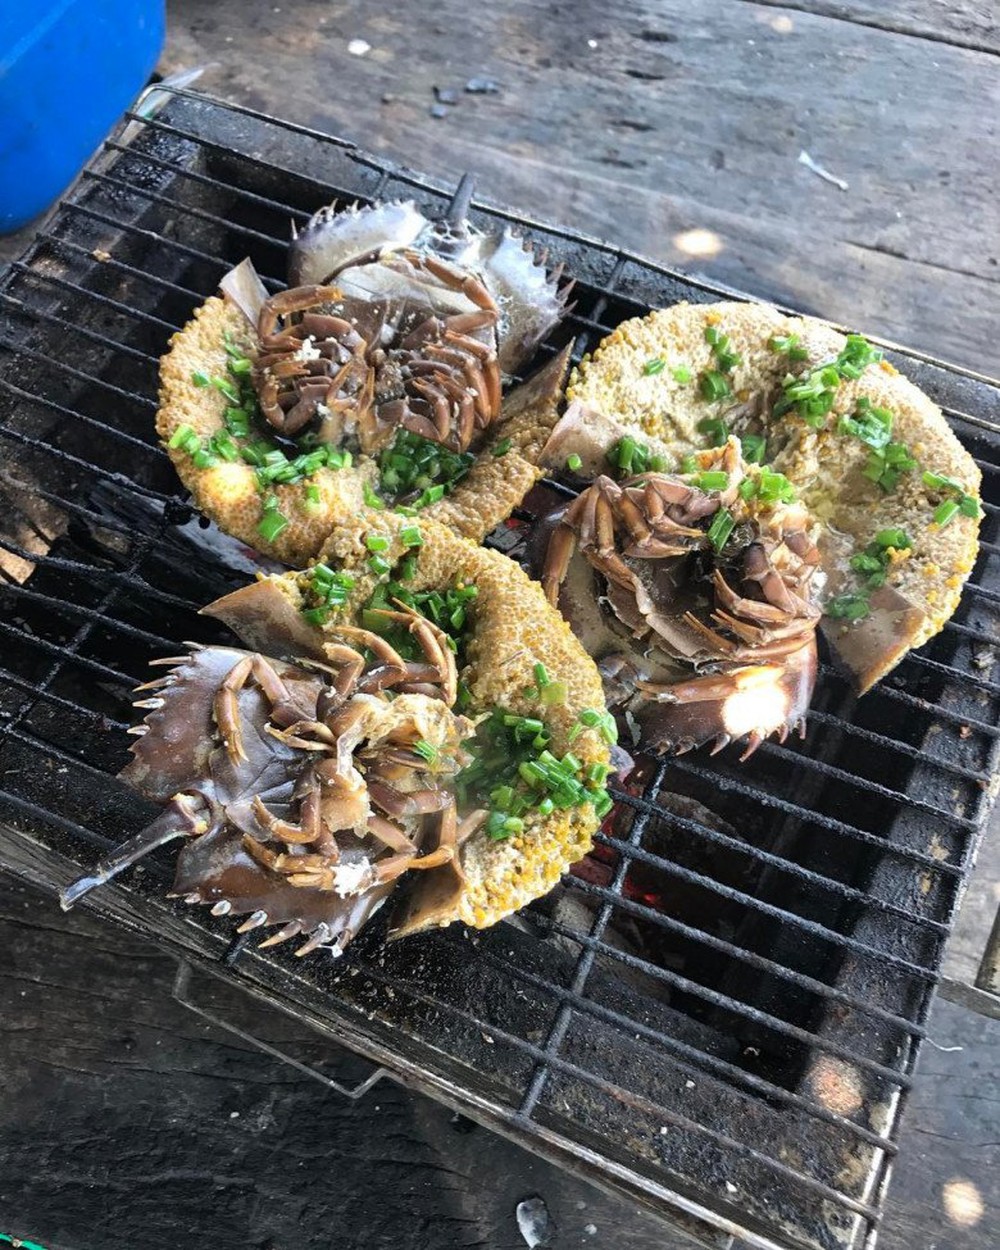 Loại hải sản hiếm ở Việt Nam: Thịt đã quý, máu của chúng còn đắt đỏ hơn nhiều - Ảnh 3.